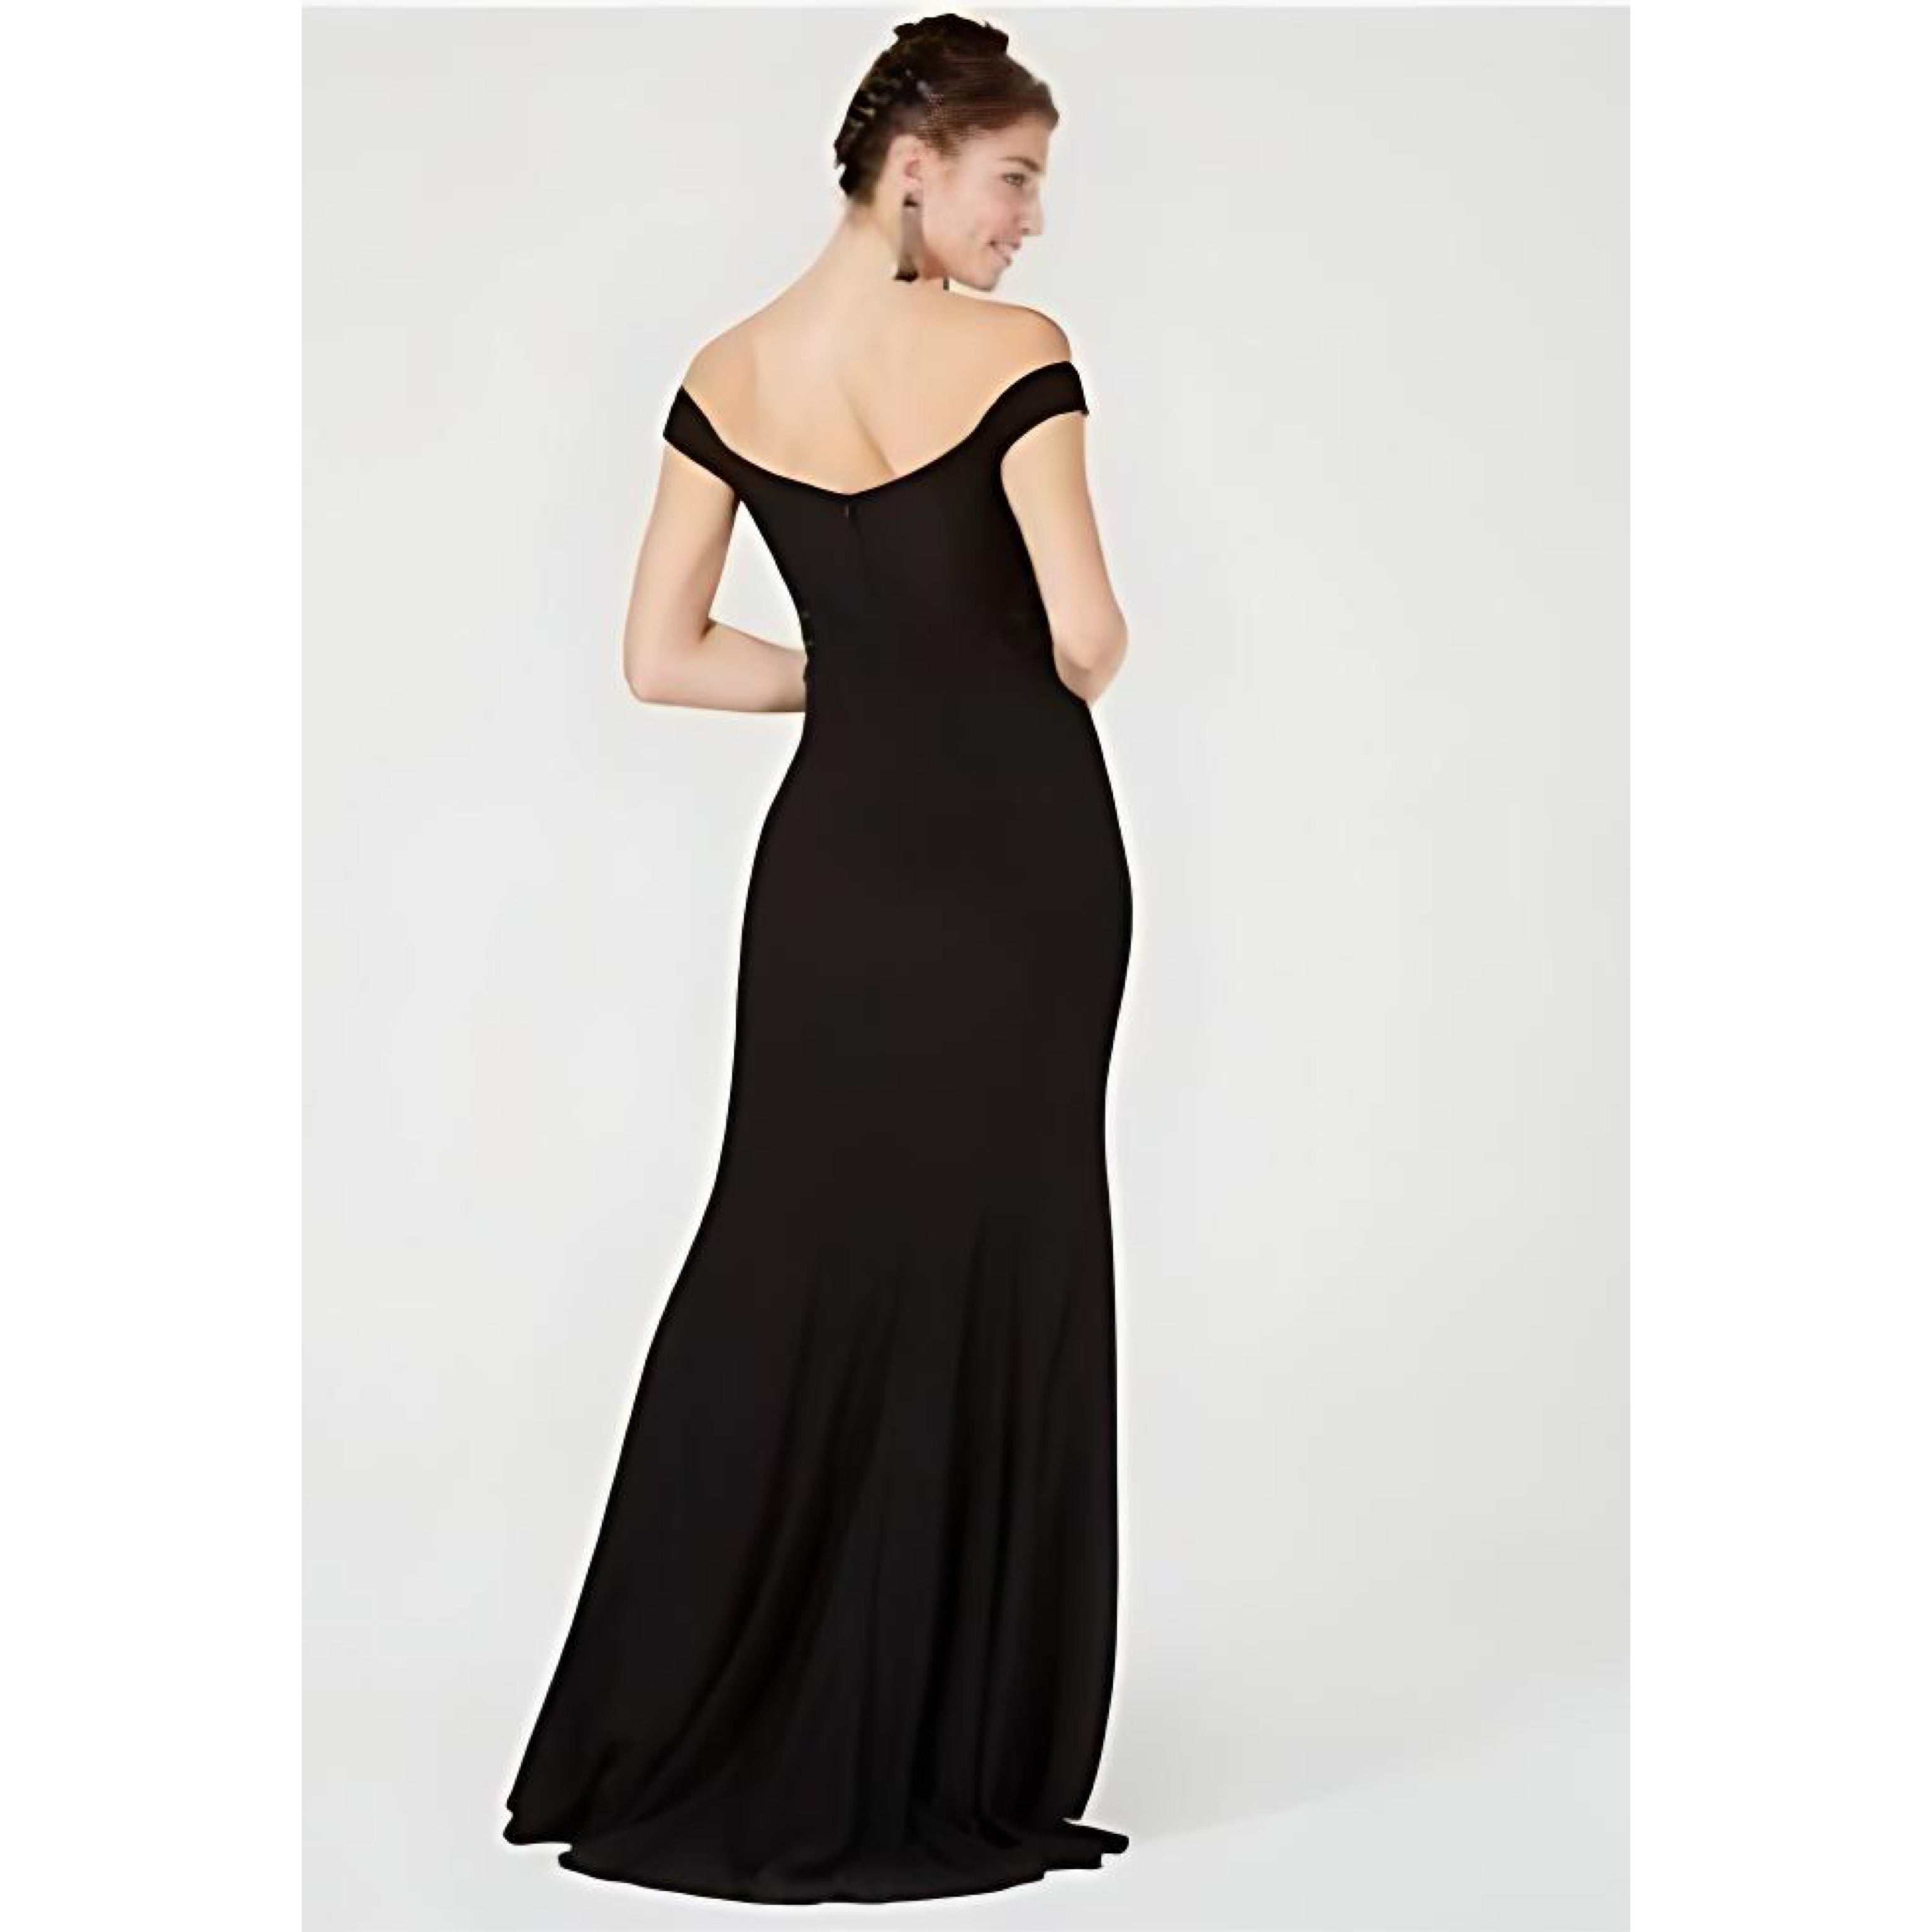 Blondie Nites black dress, size 0